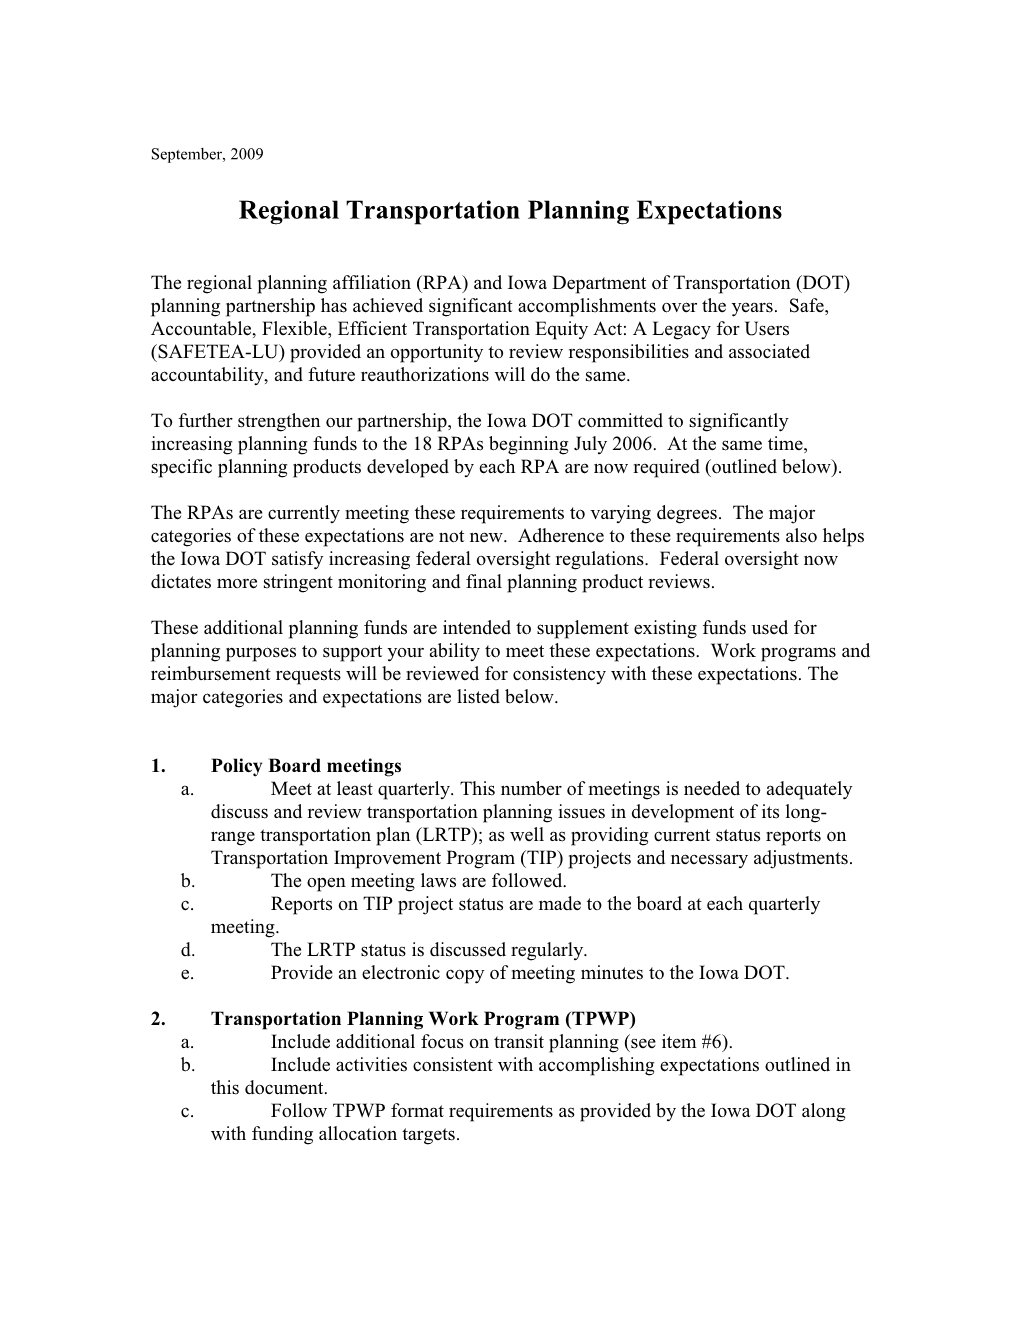 Regional Transportation Planning Expectations